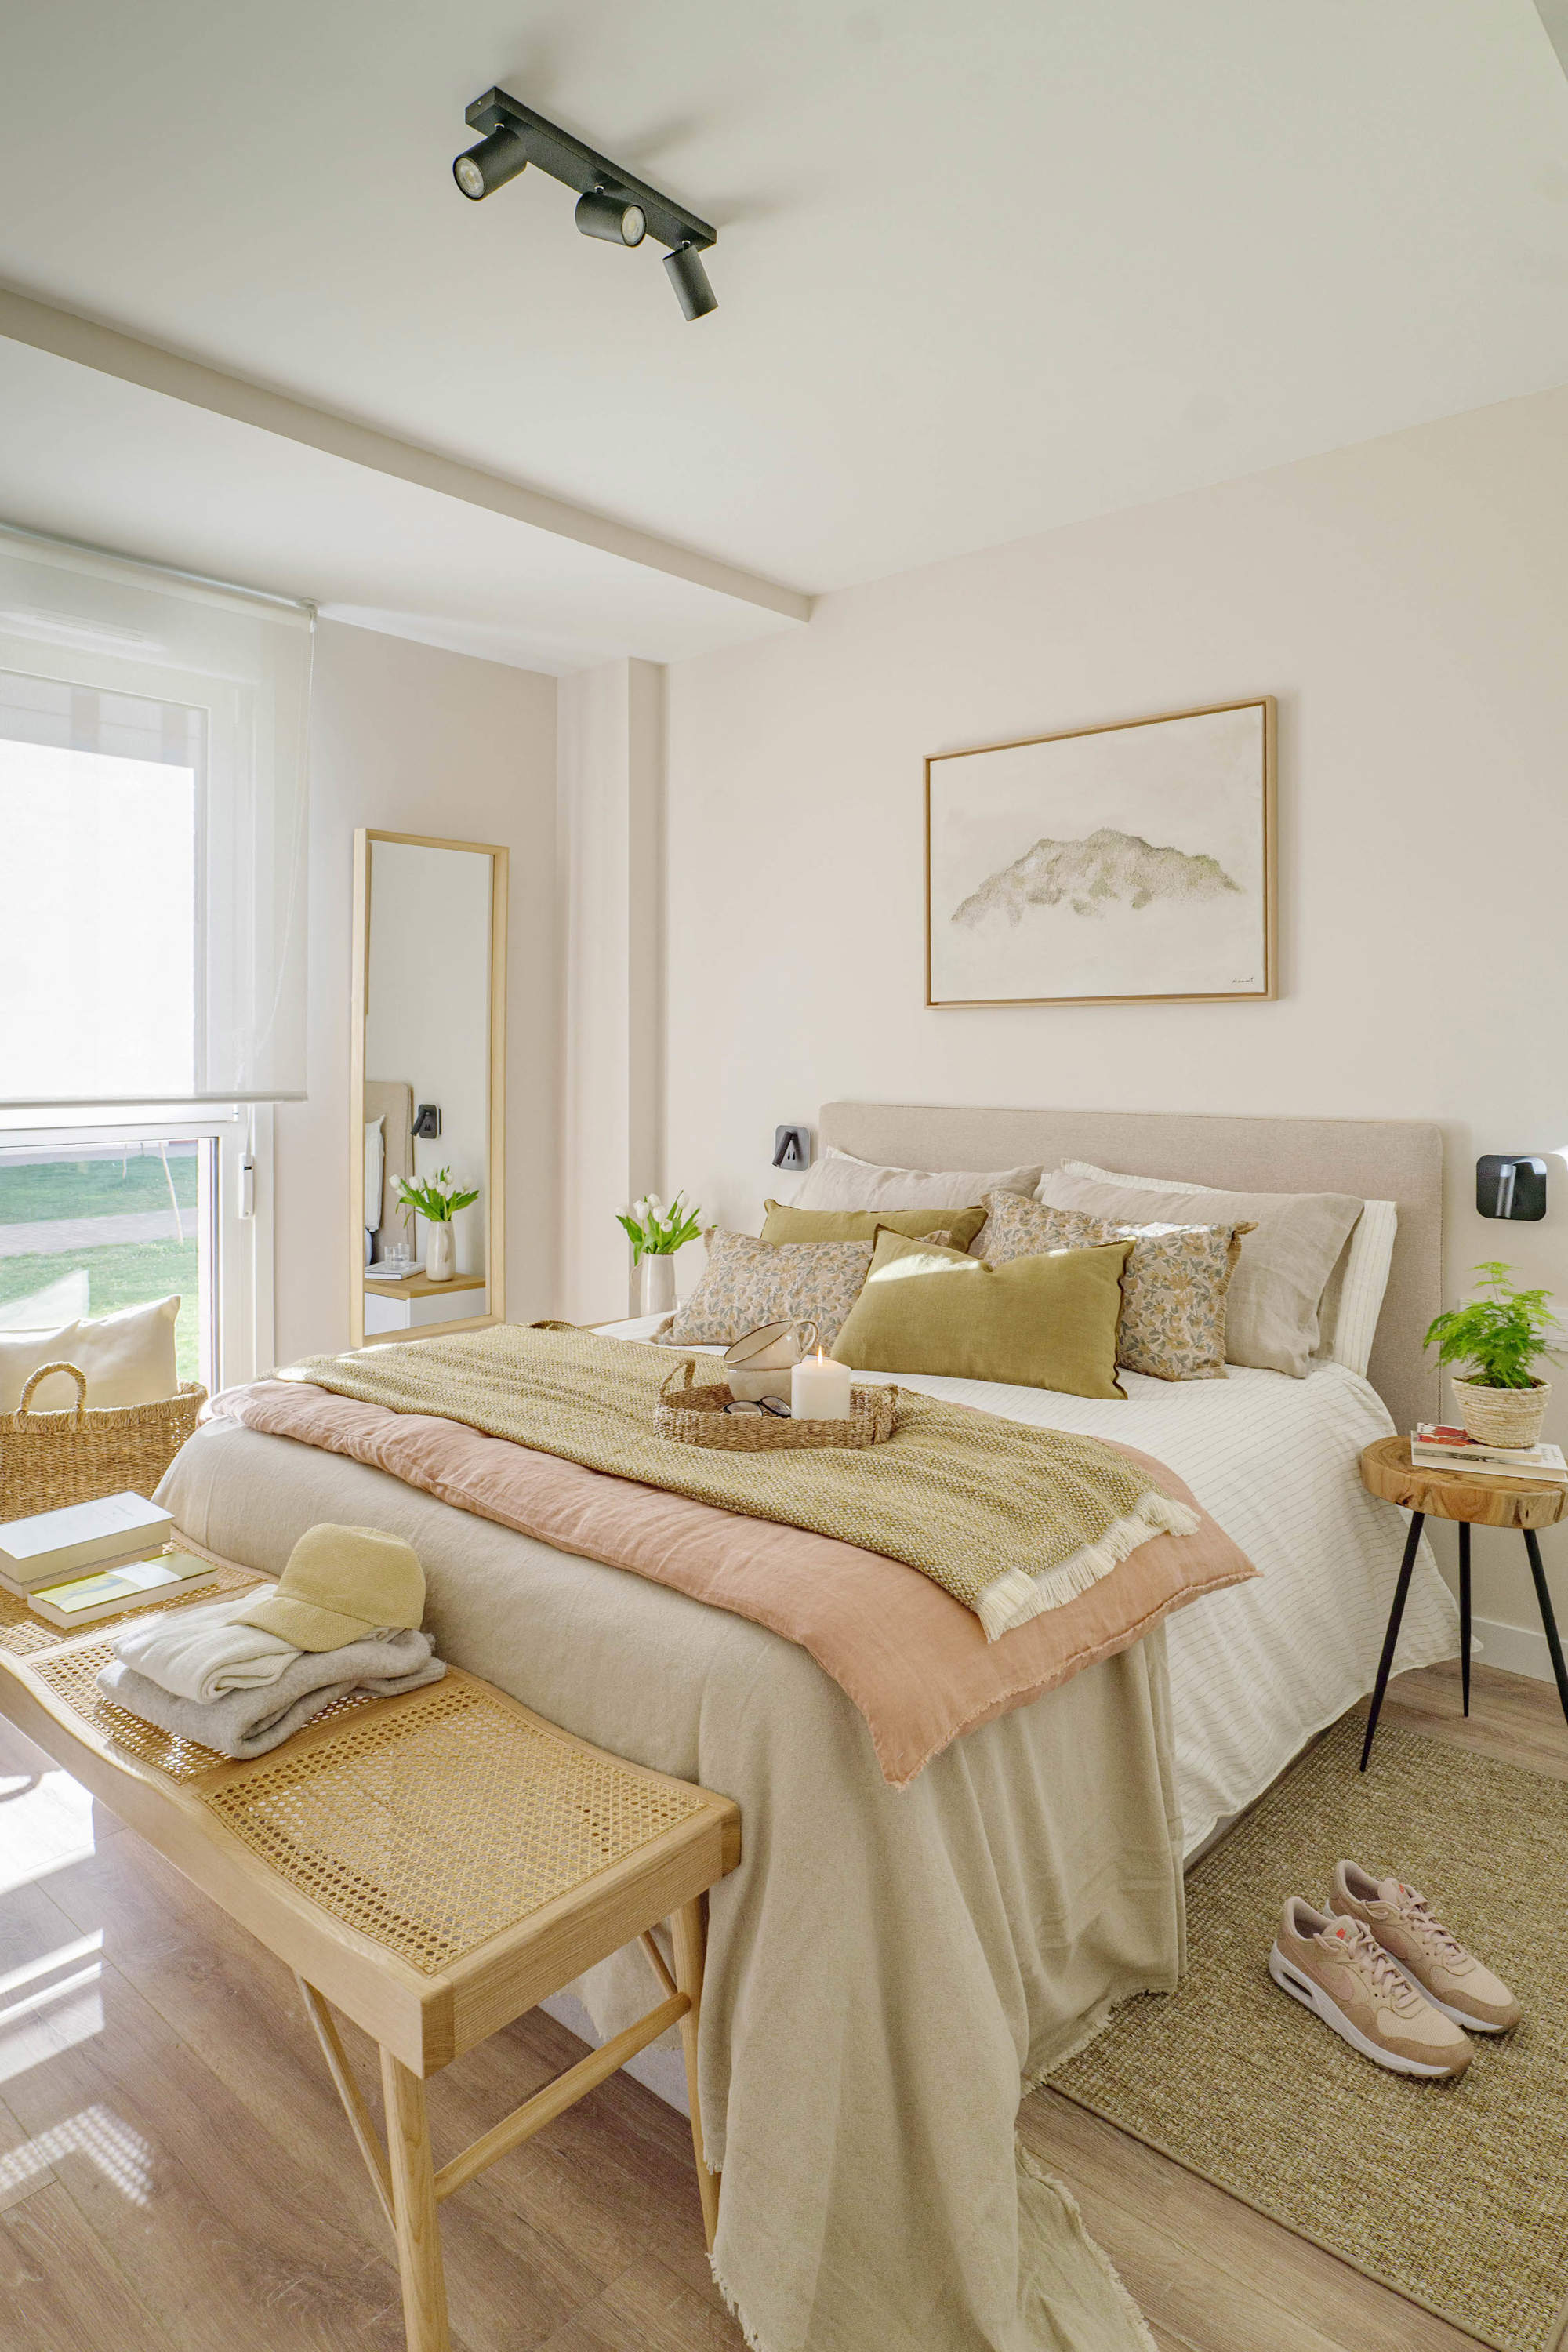 Dormitorio con cabecero de lino, banqueta de madera y textiles mostaza por quefalamaria